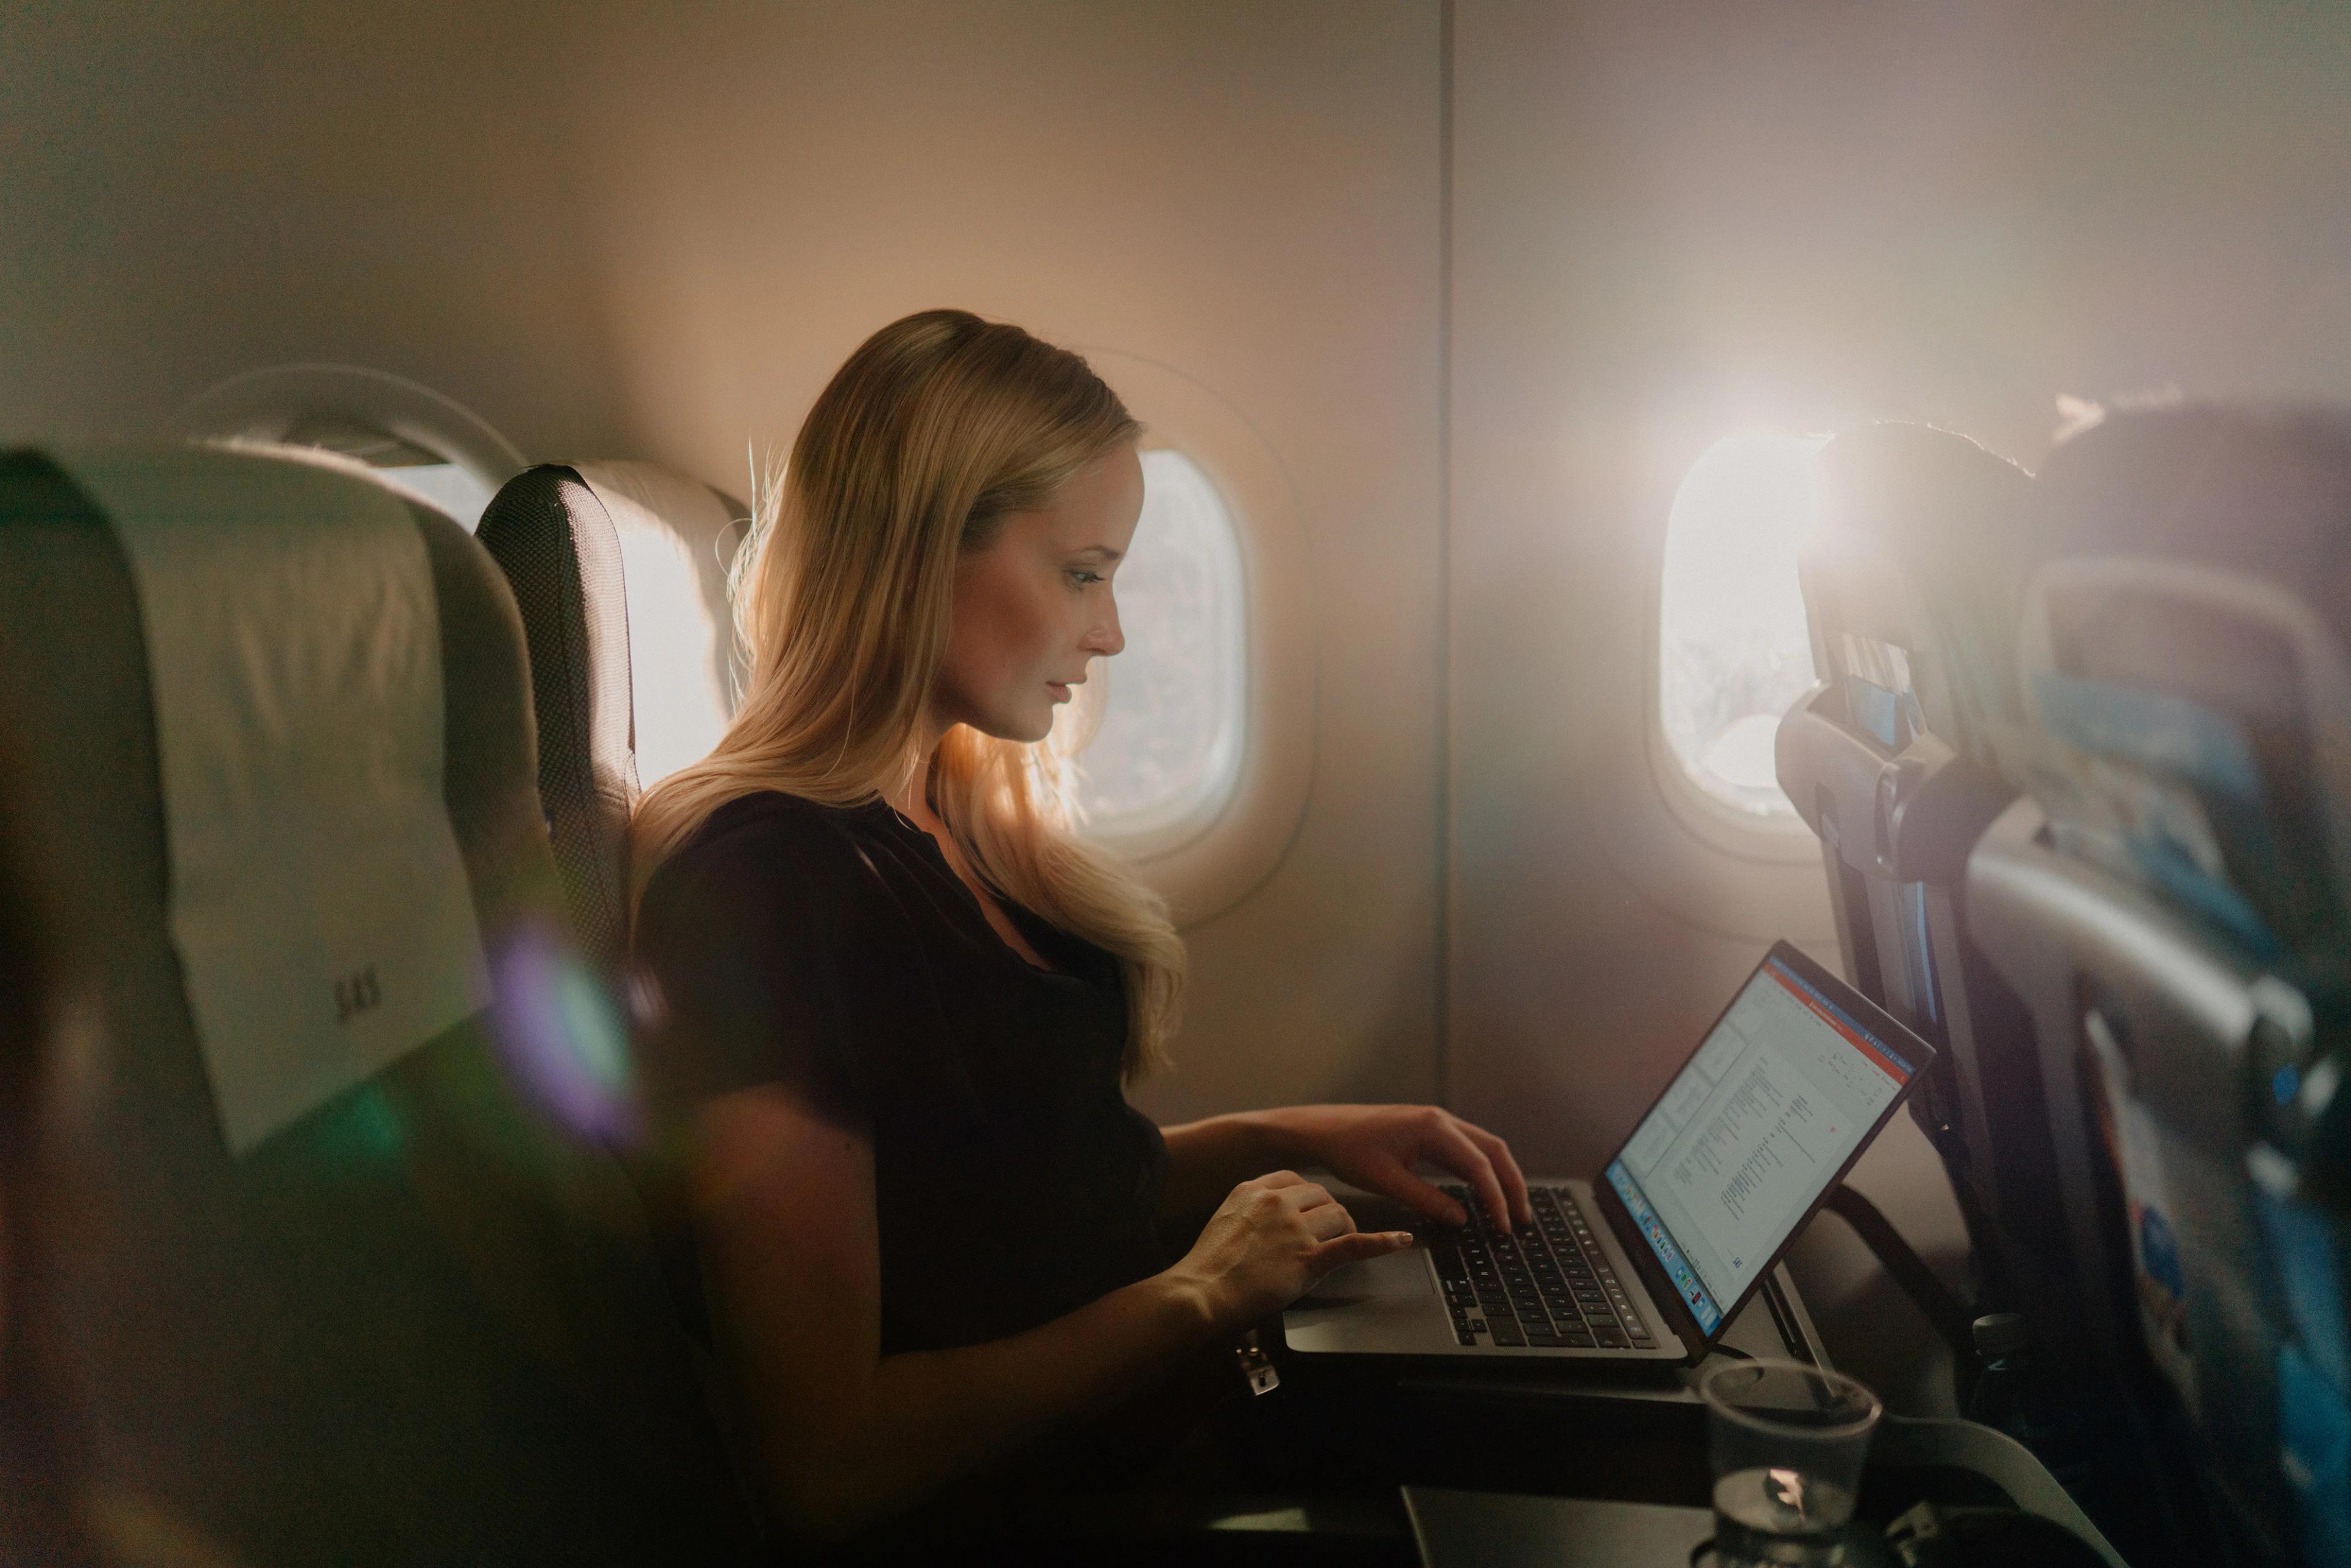 Kvindelig rejsende bruger WiFi om bord